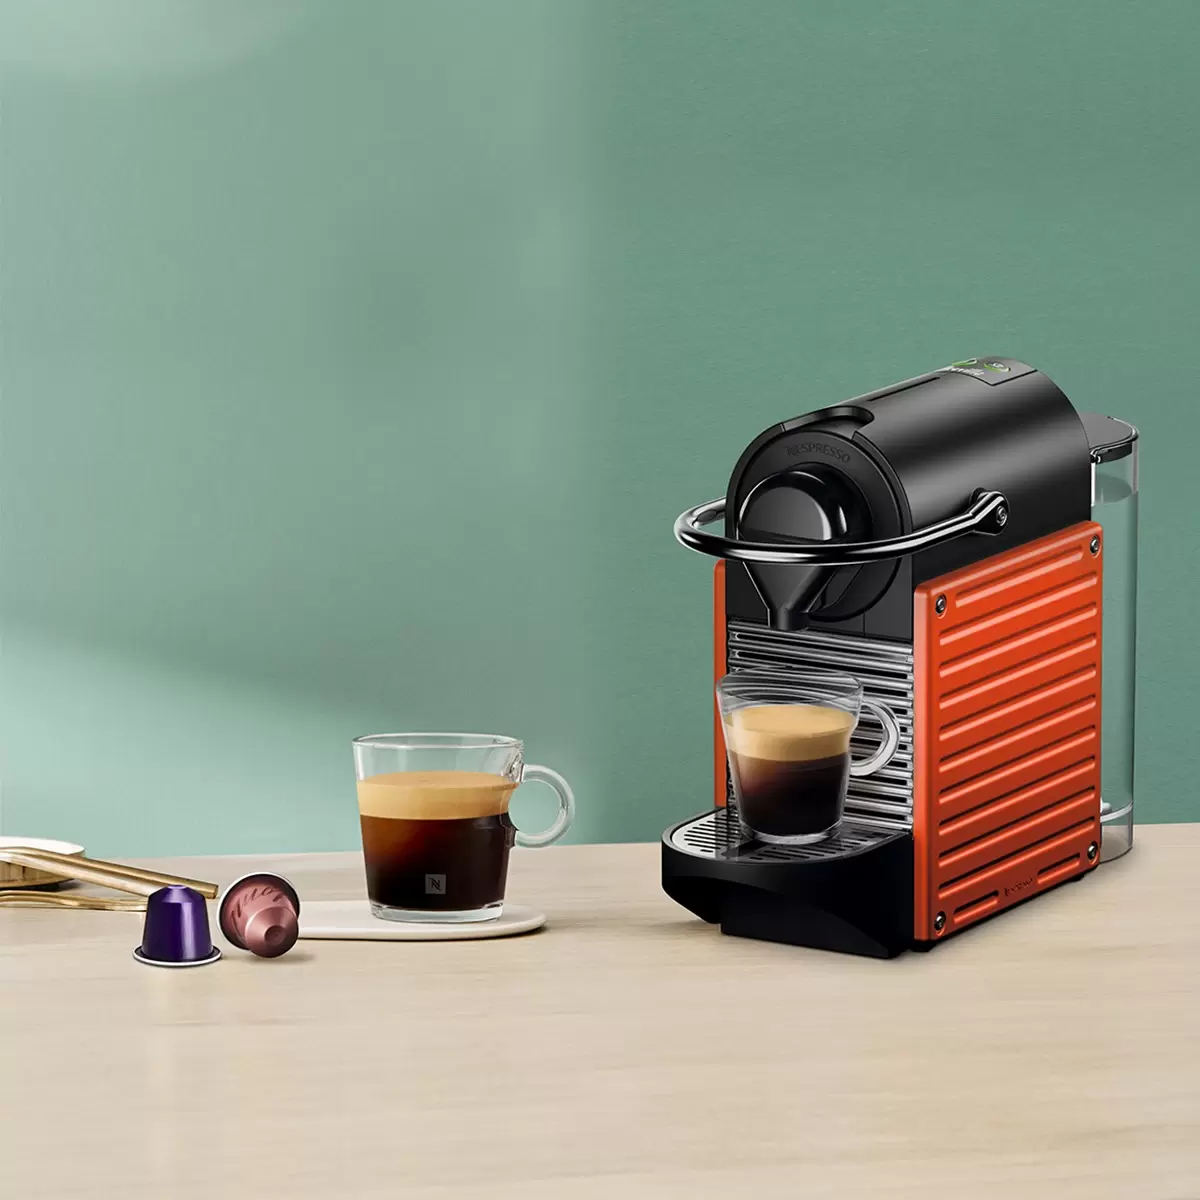 Nespresso Pixie 義式膠囊咖啡機 紅色 含40顆咖啡膠囊